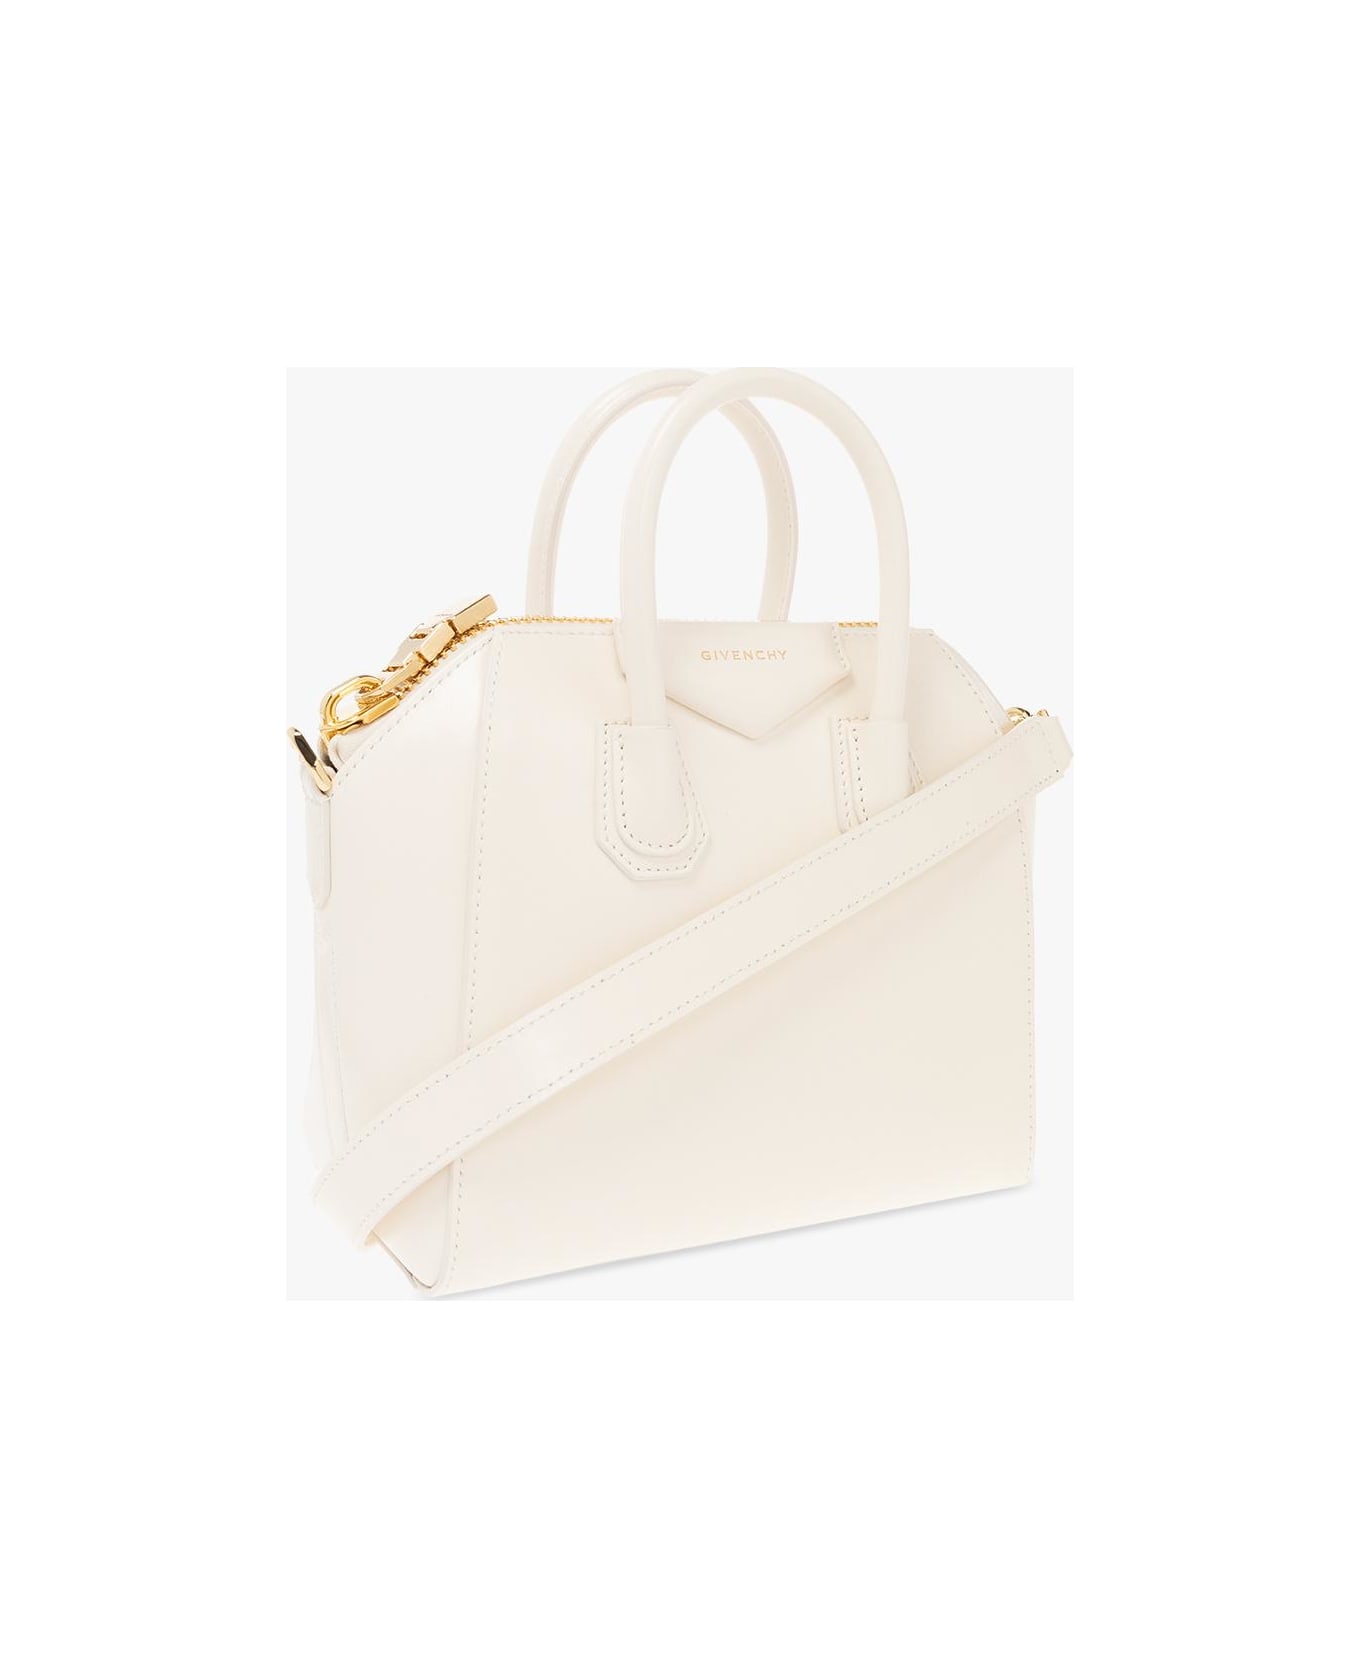 Givenchy Antigona Mini Handbag - White トートバッグ